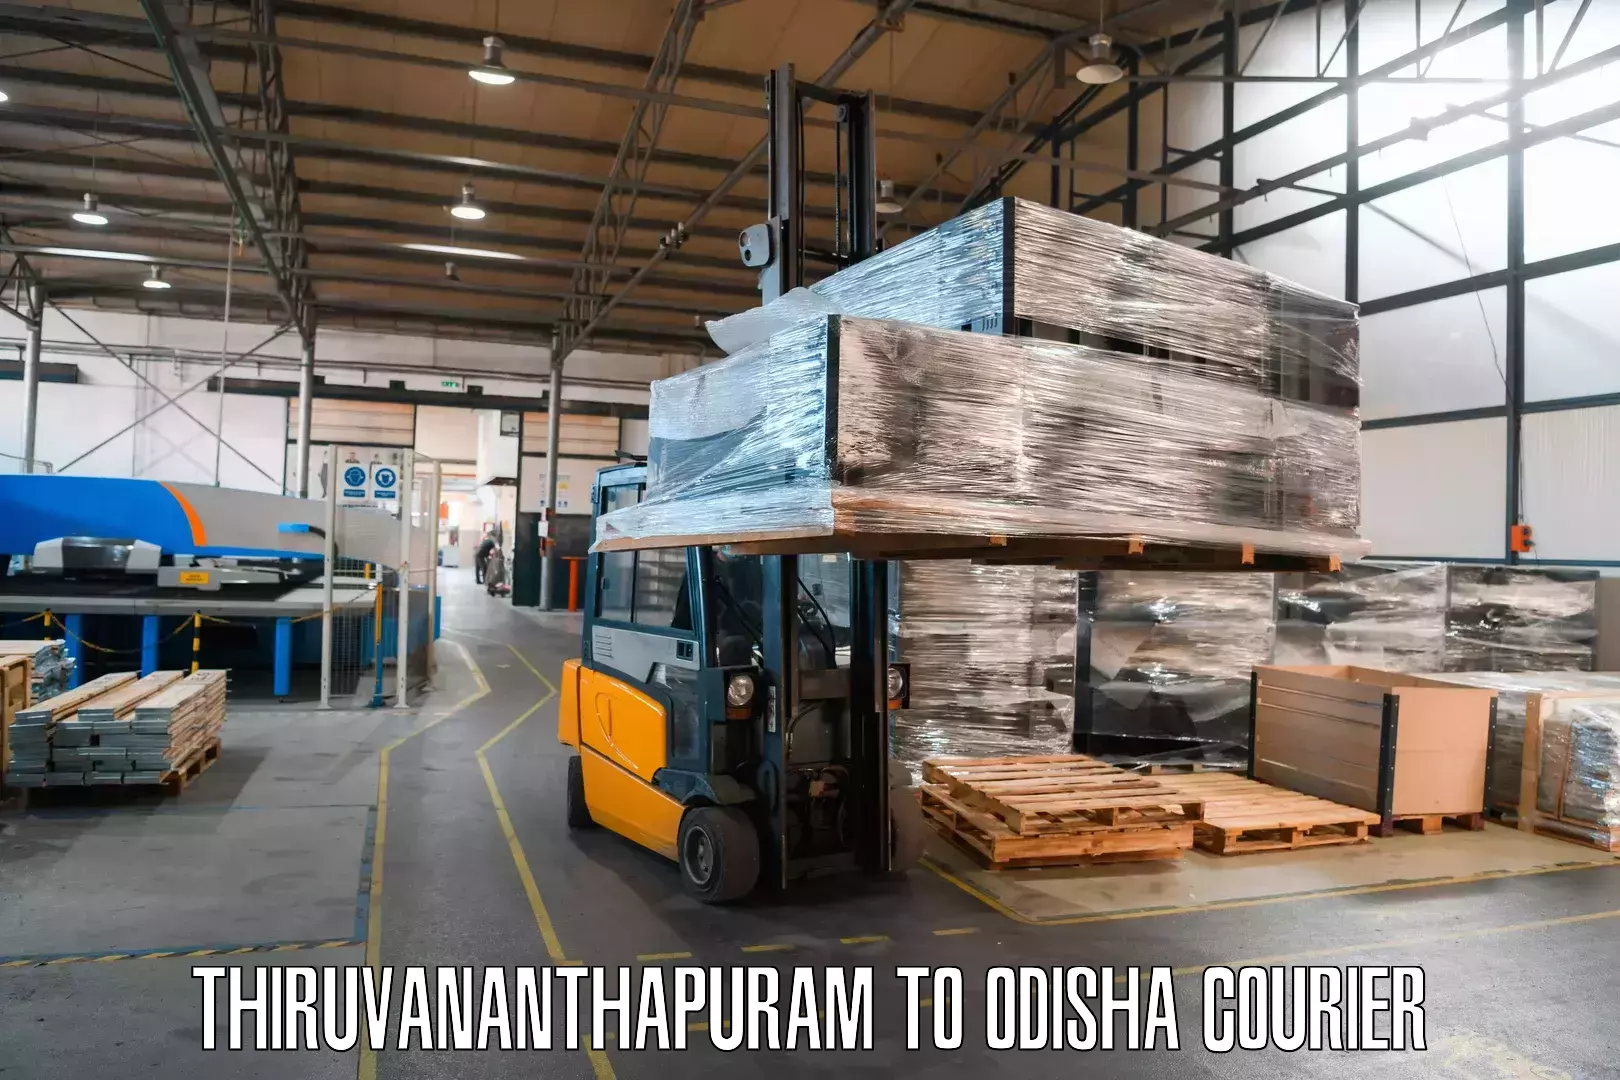 Express courier capabilities Thiruvananthapuram to Balikuda